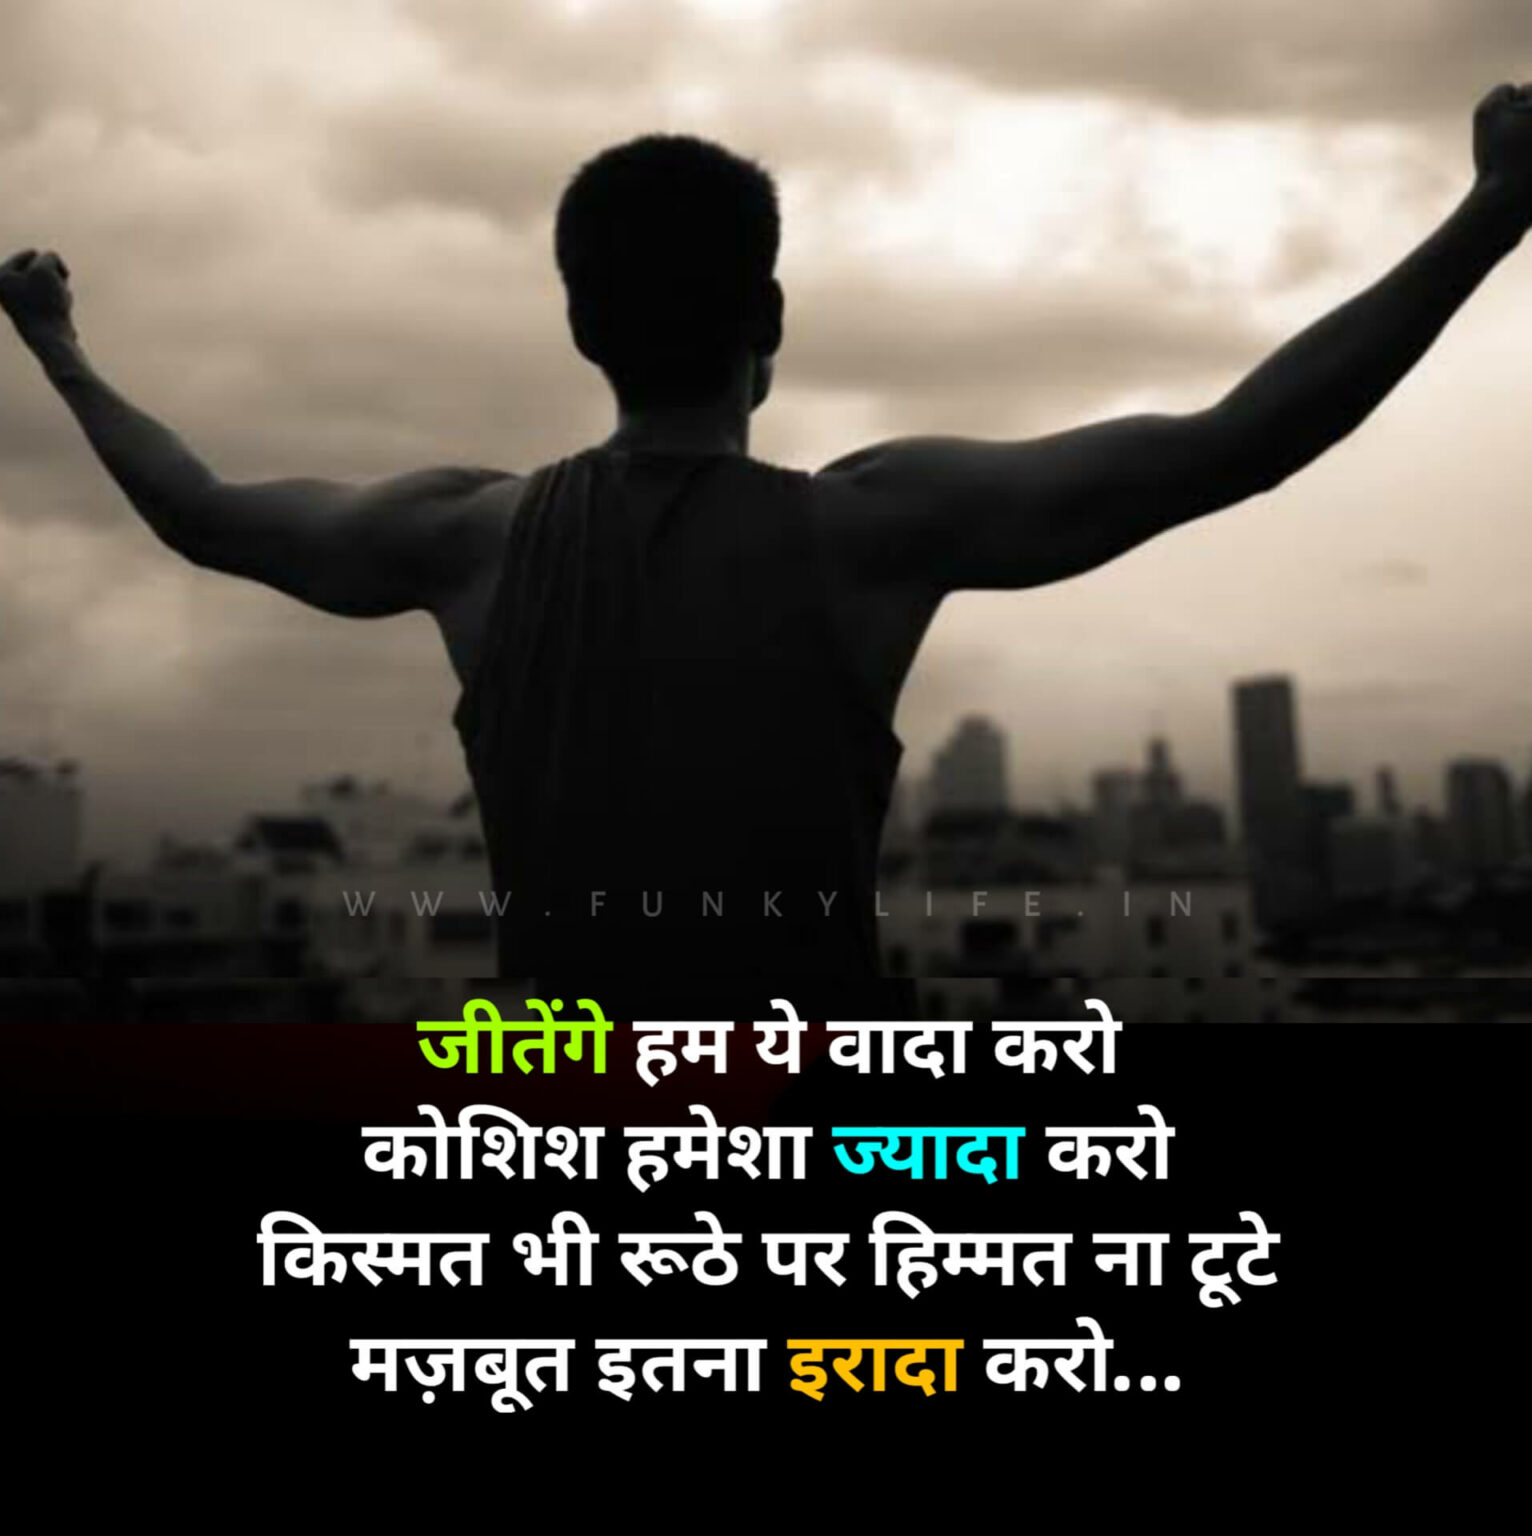 Motivational Shayari In Hindi From Funkylife 2 1532x1536 